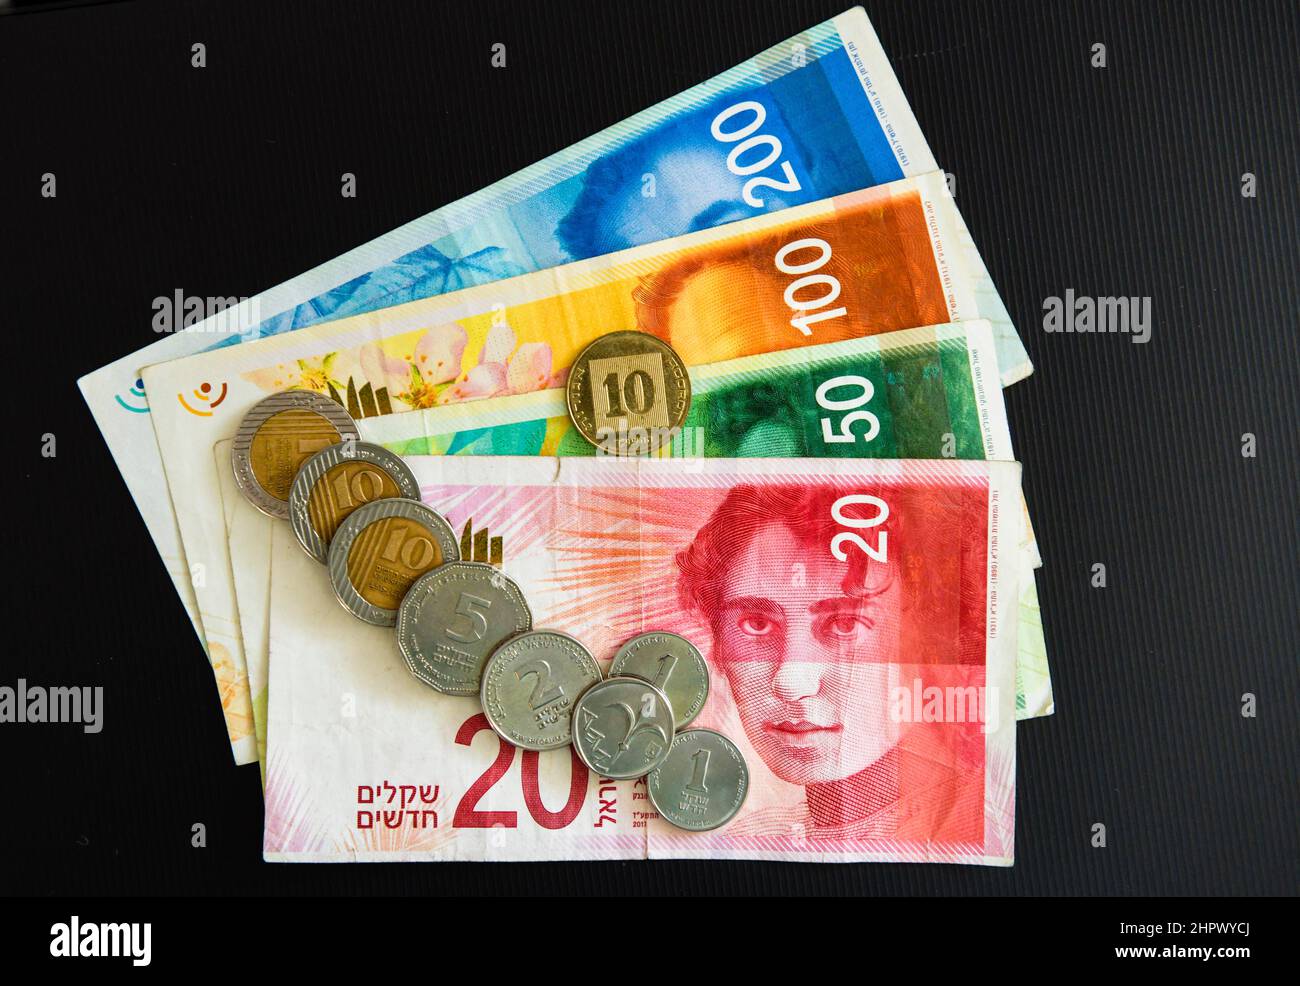 Schekel - Münzen Von Israel Stockfoto - Bild von bargeld